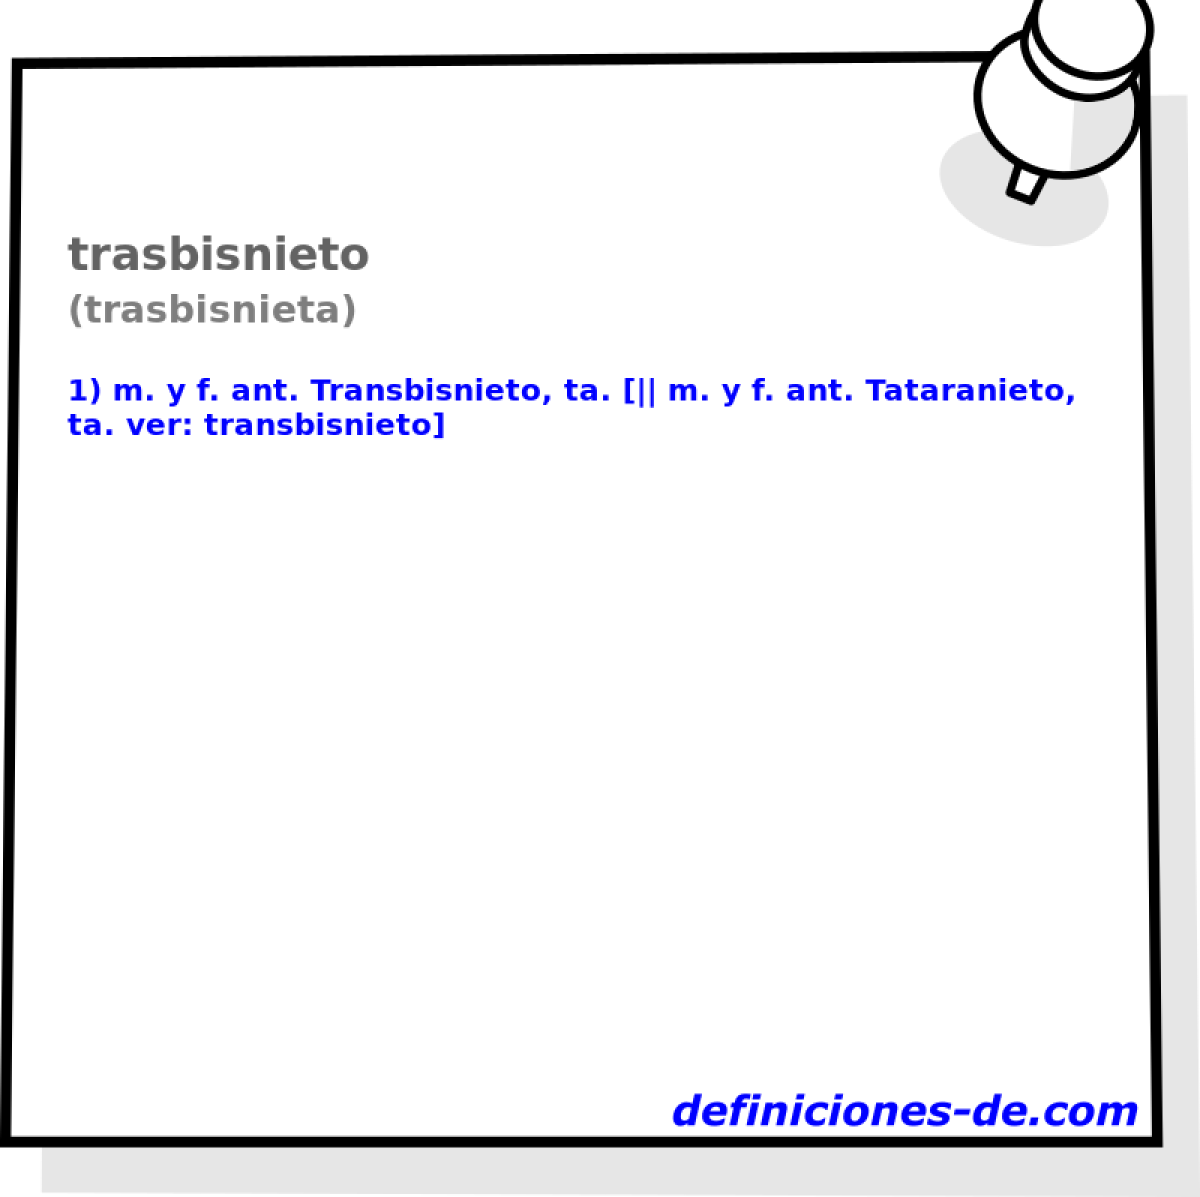 trasbisnieto (trasbisnieta)